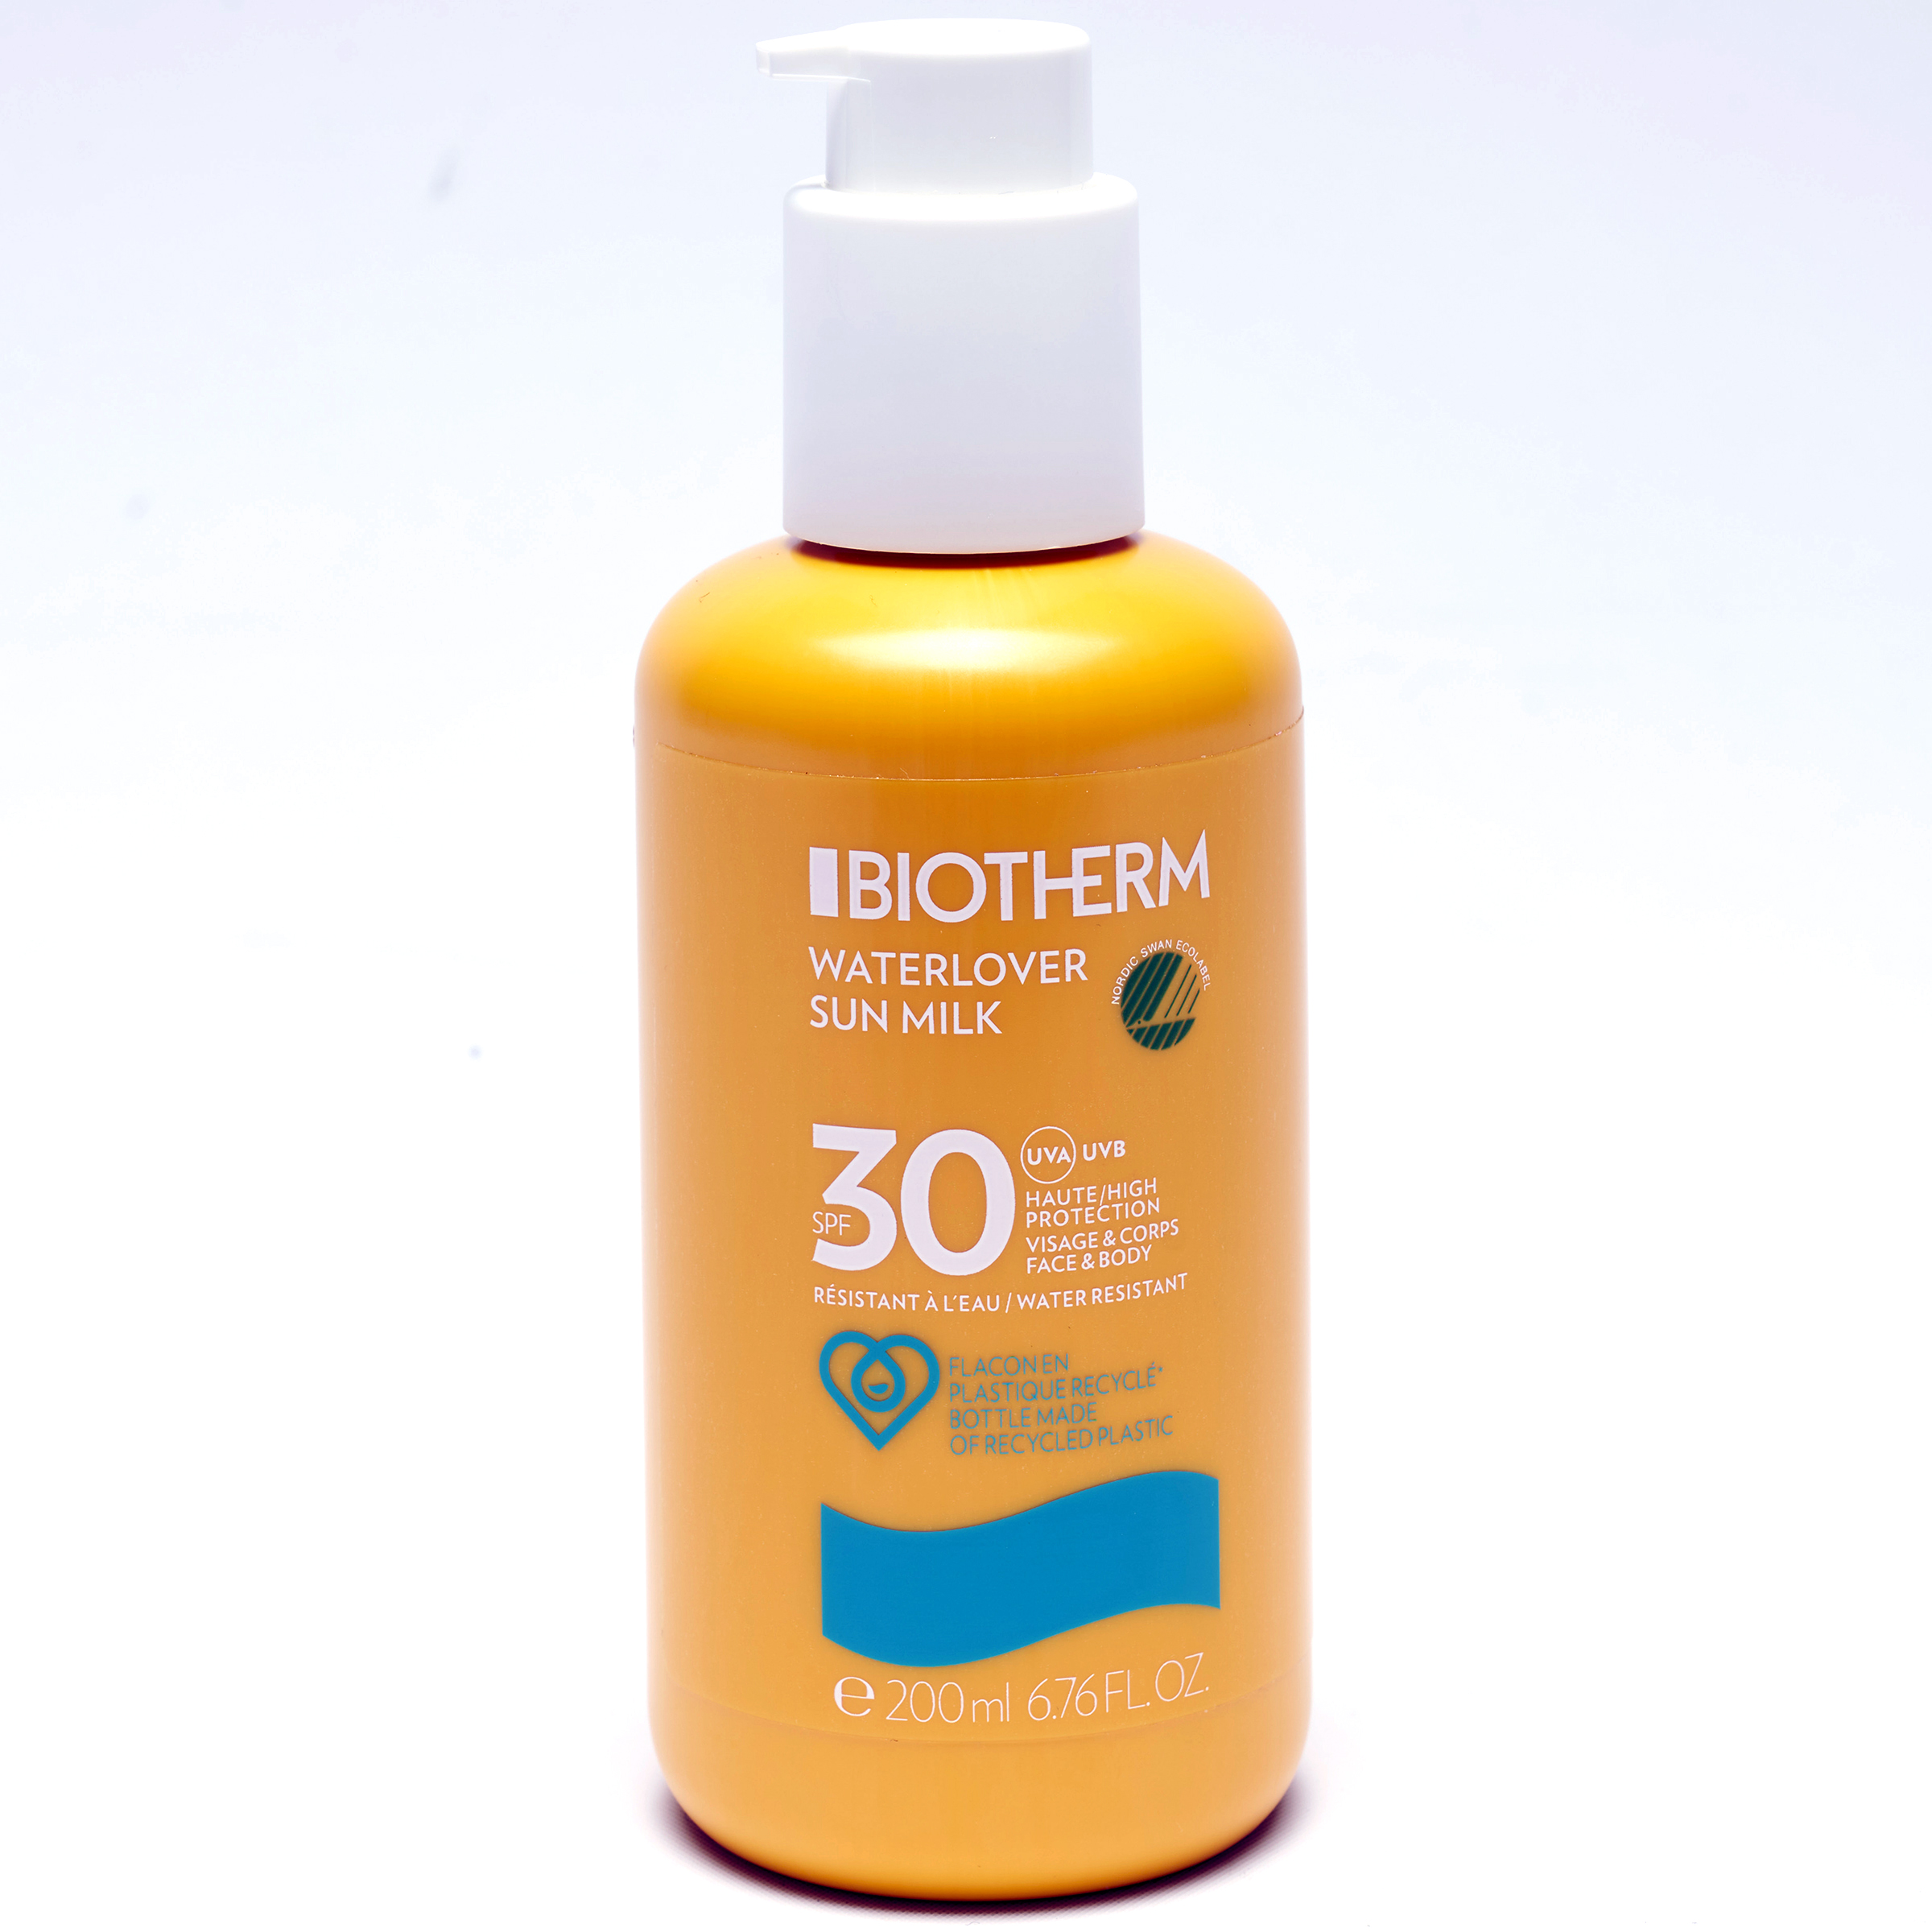 Biotherm Waterlover sun milk - 